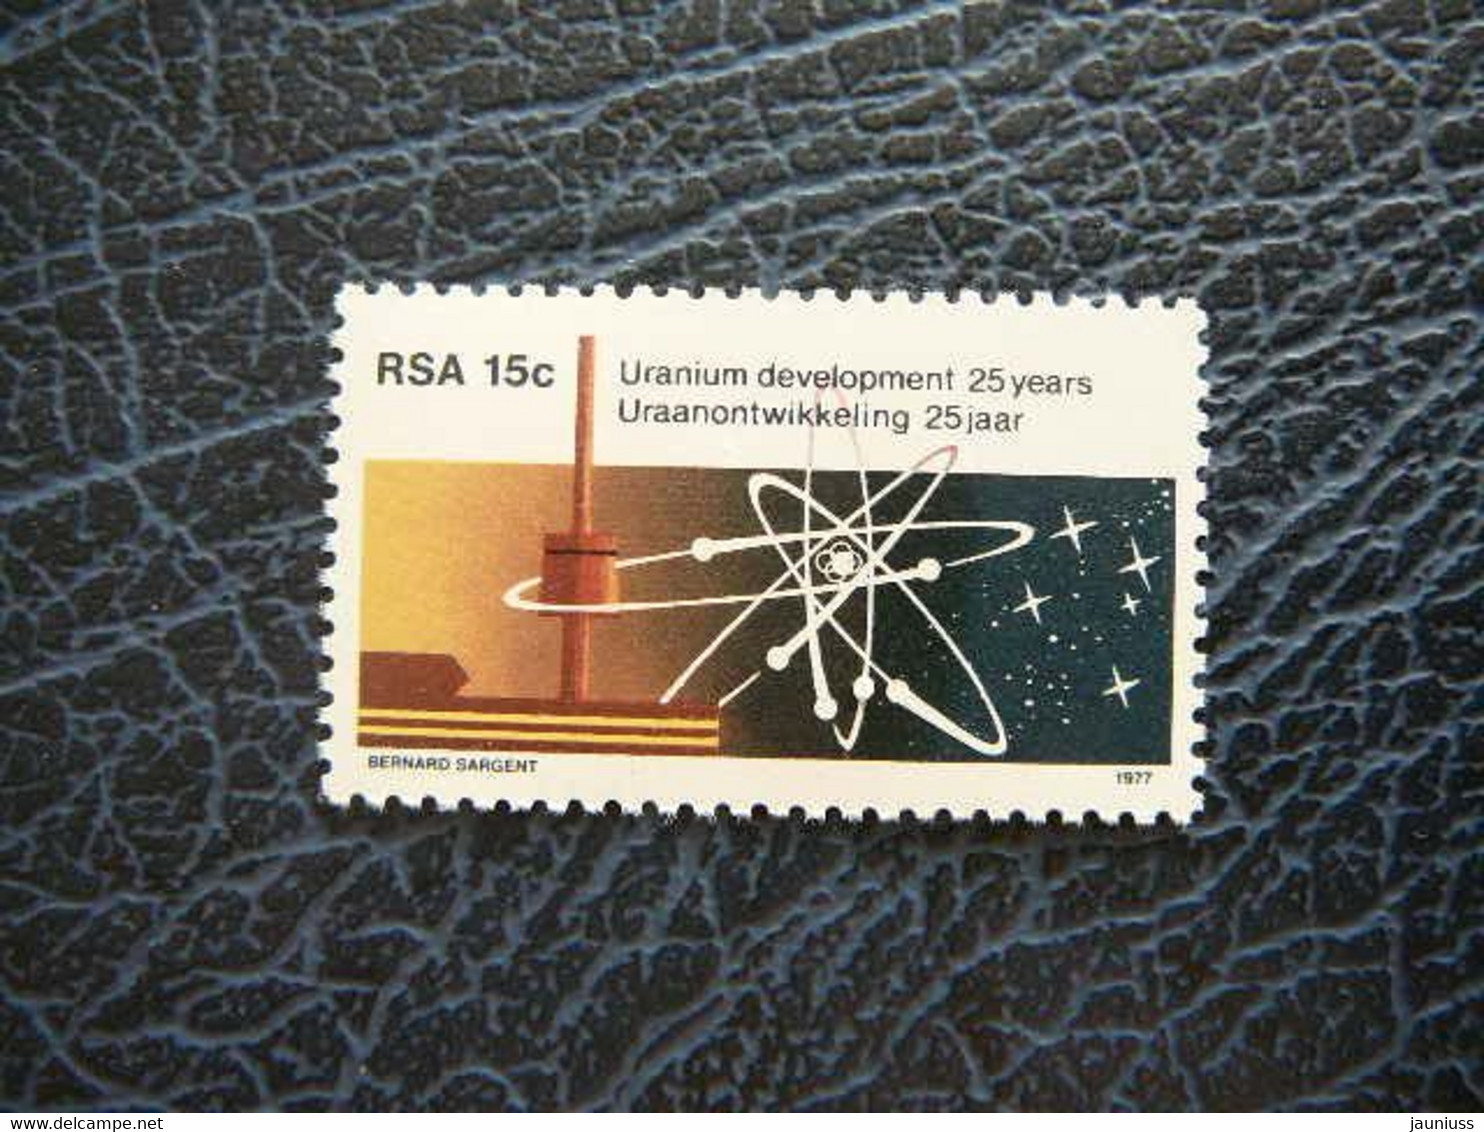 Uranium Development # South Africa RSA 1977 MNH #535 - Ongebruikt